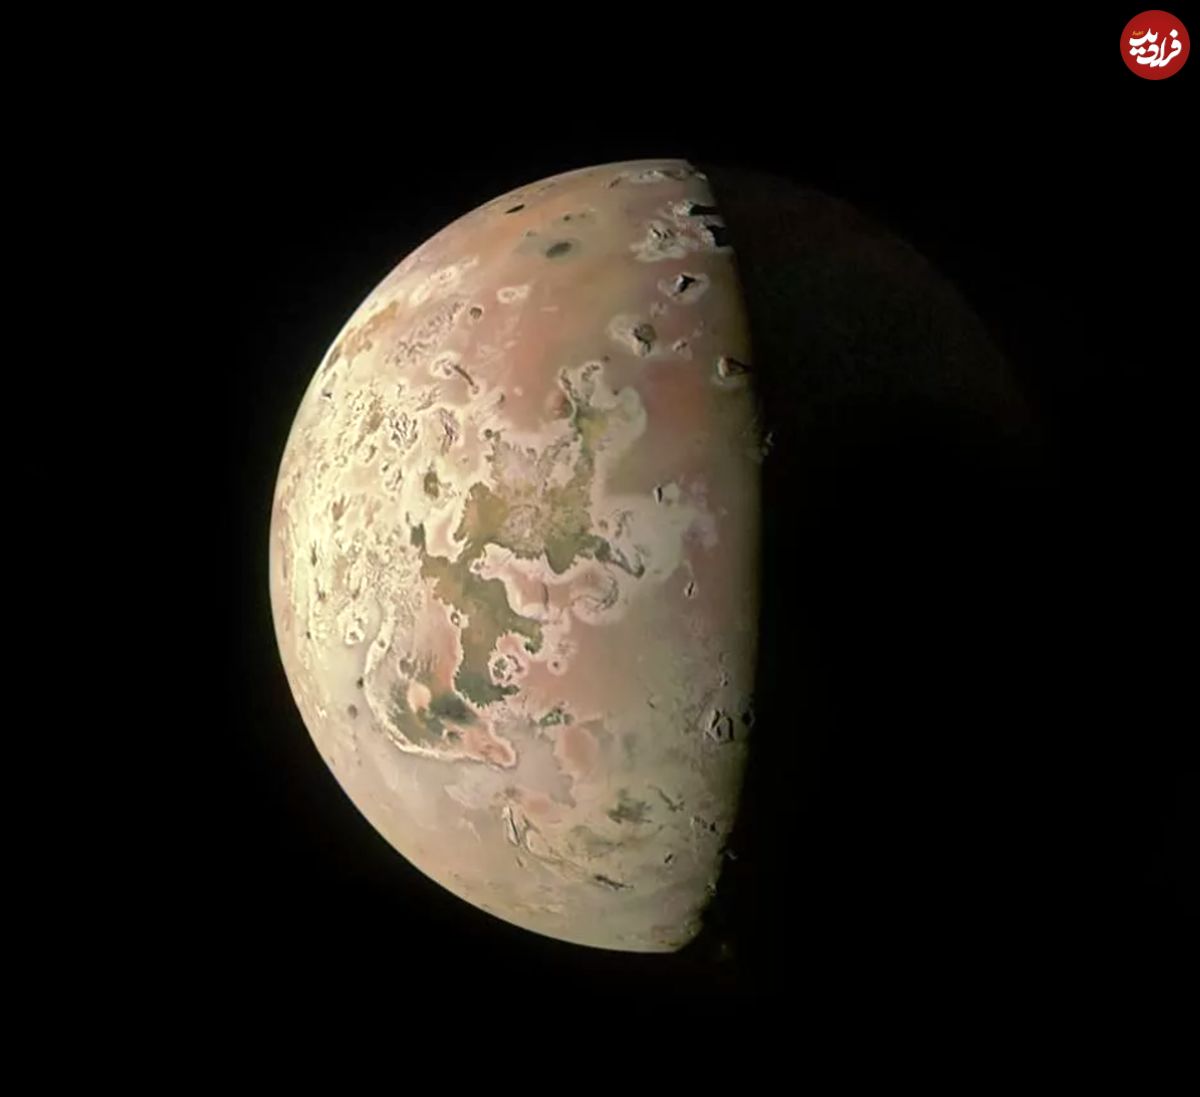 (عکس) بهترین تصویر آیو در 20 سال اخیر از دید ناسا؛ شکار زیبایی قمر مشتری